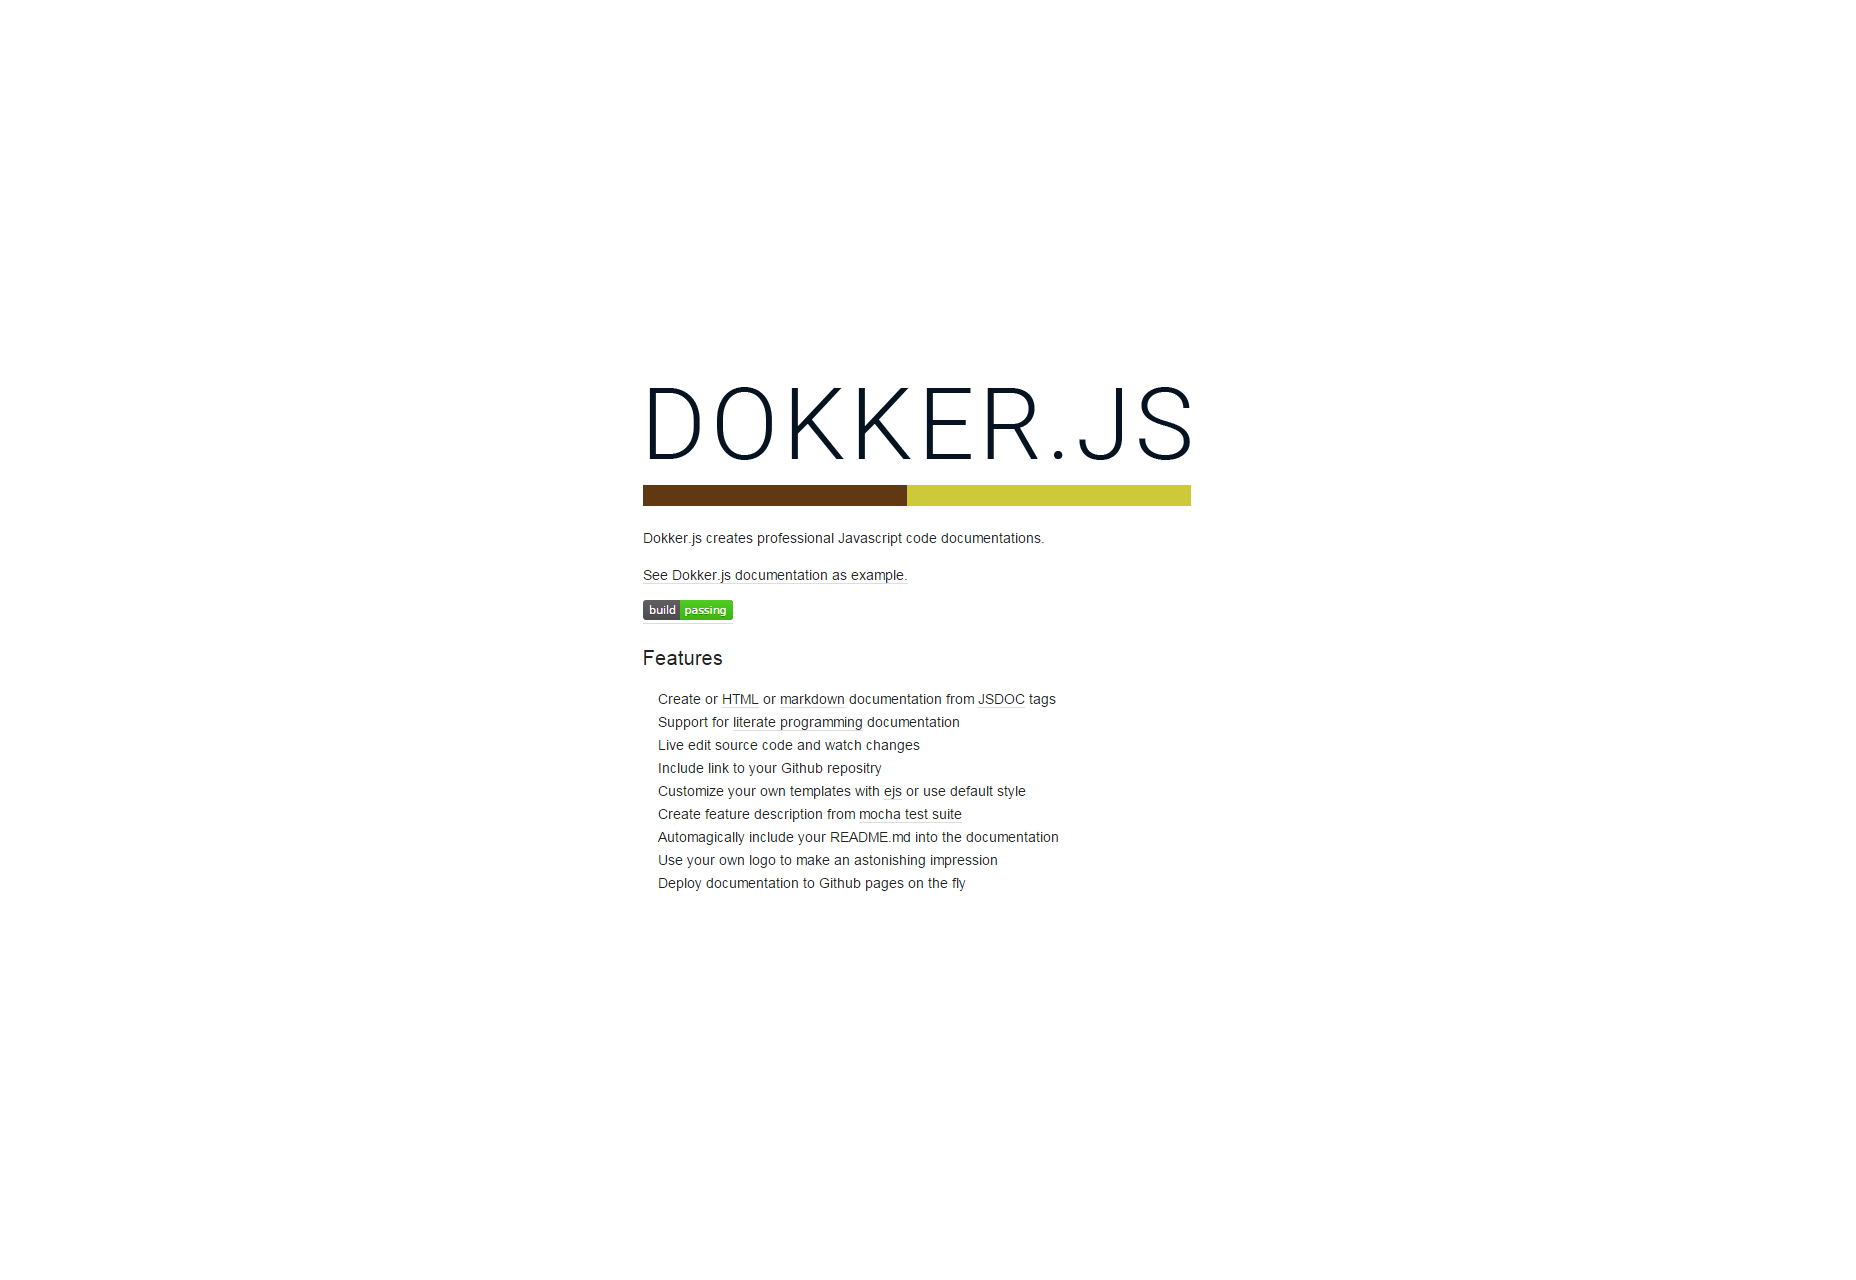 Dokker.js: Professionel Javascript Kode Dokumentation Creator